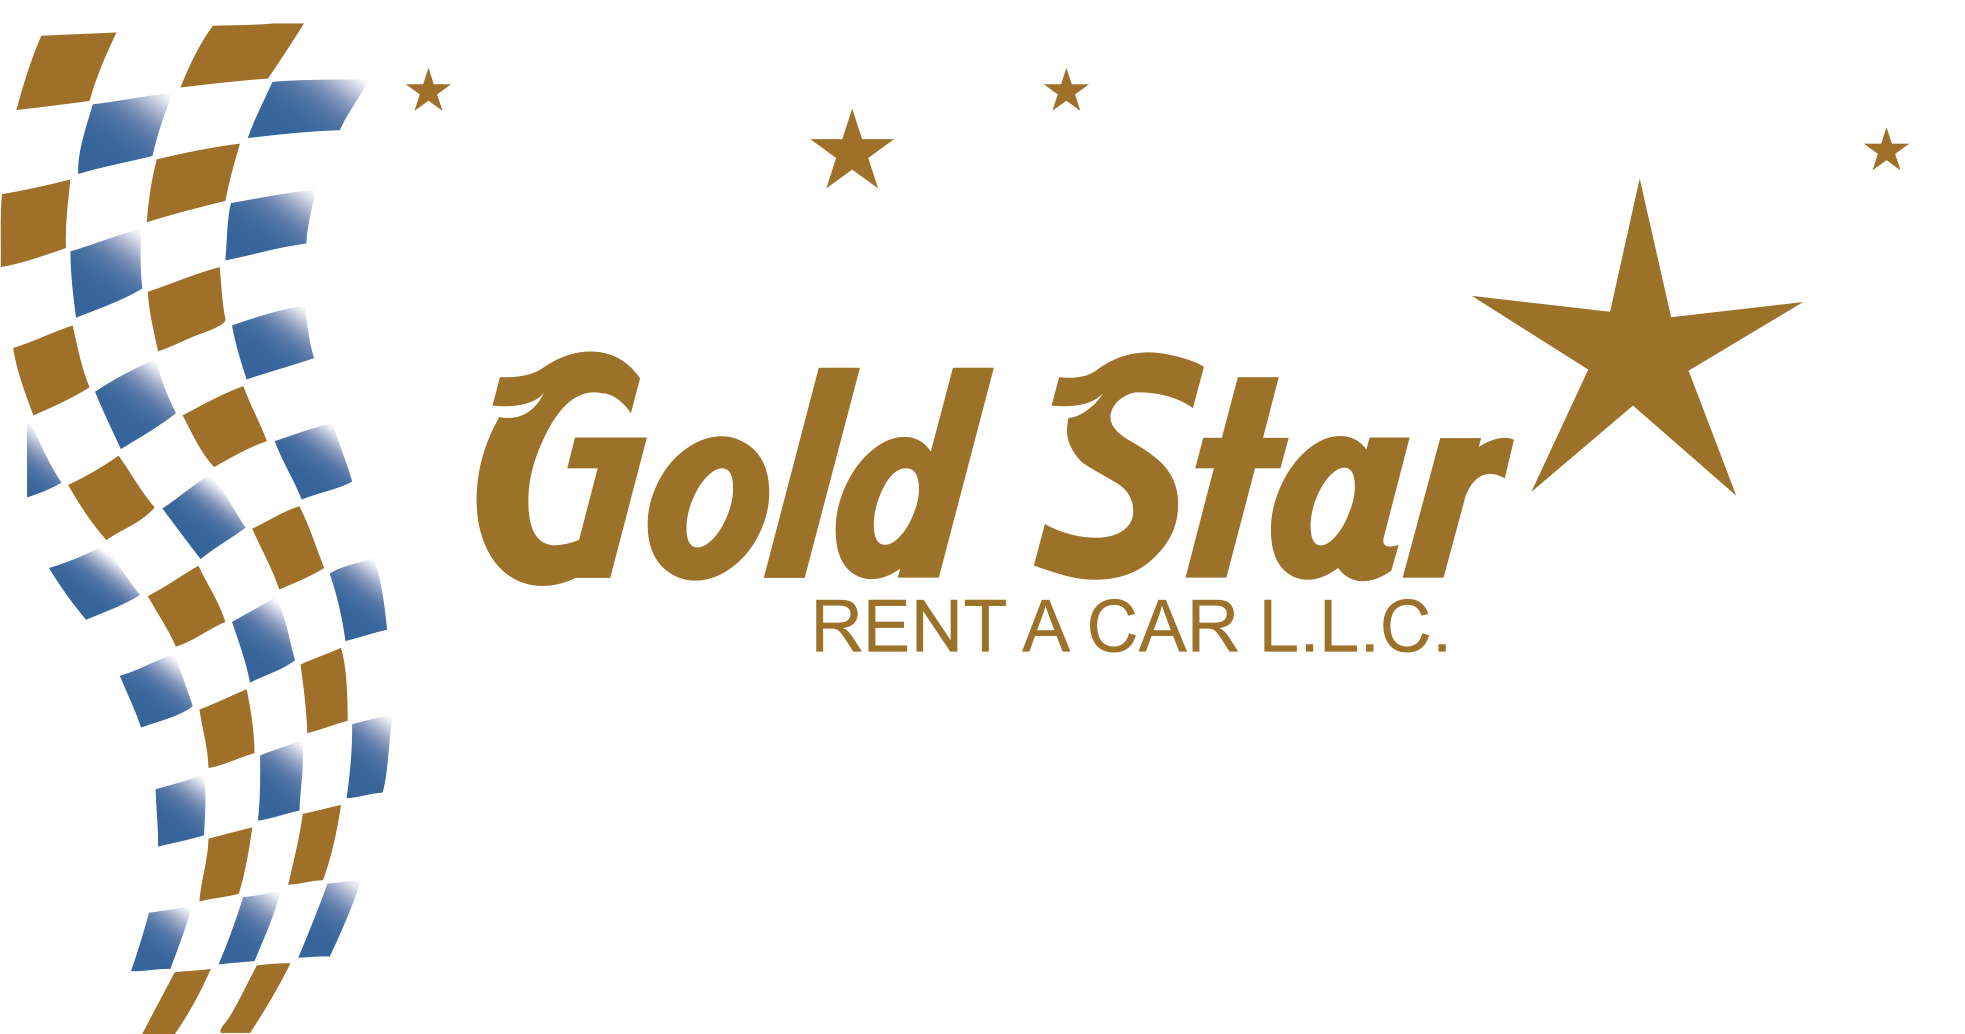 Gold Star Rent A Car Dubai, UAE